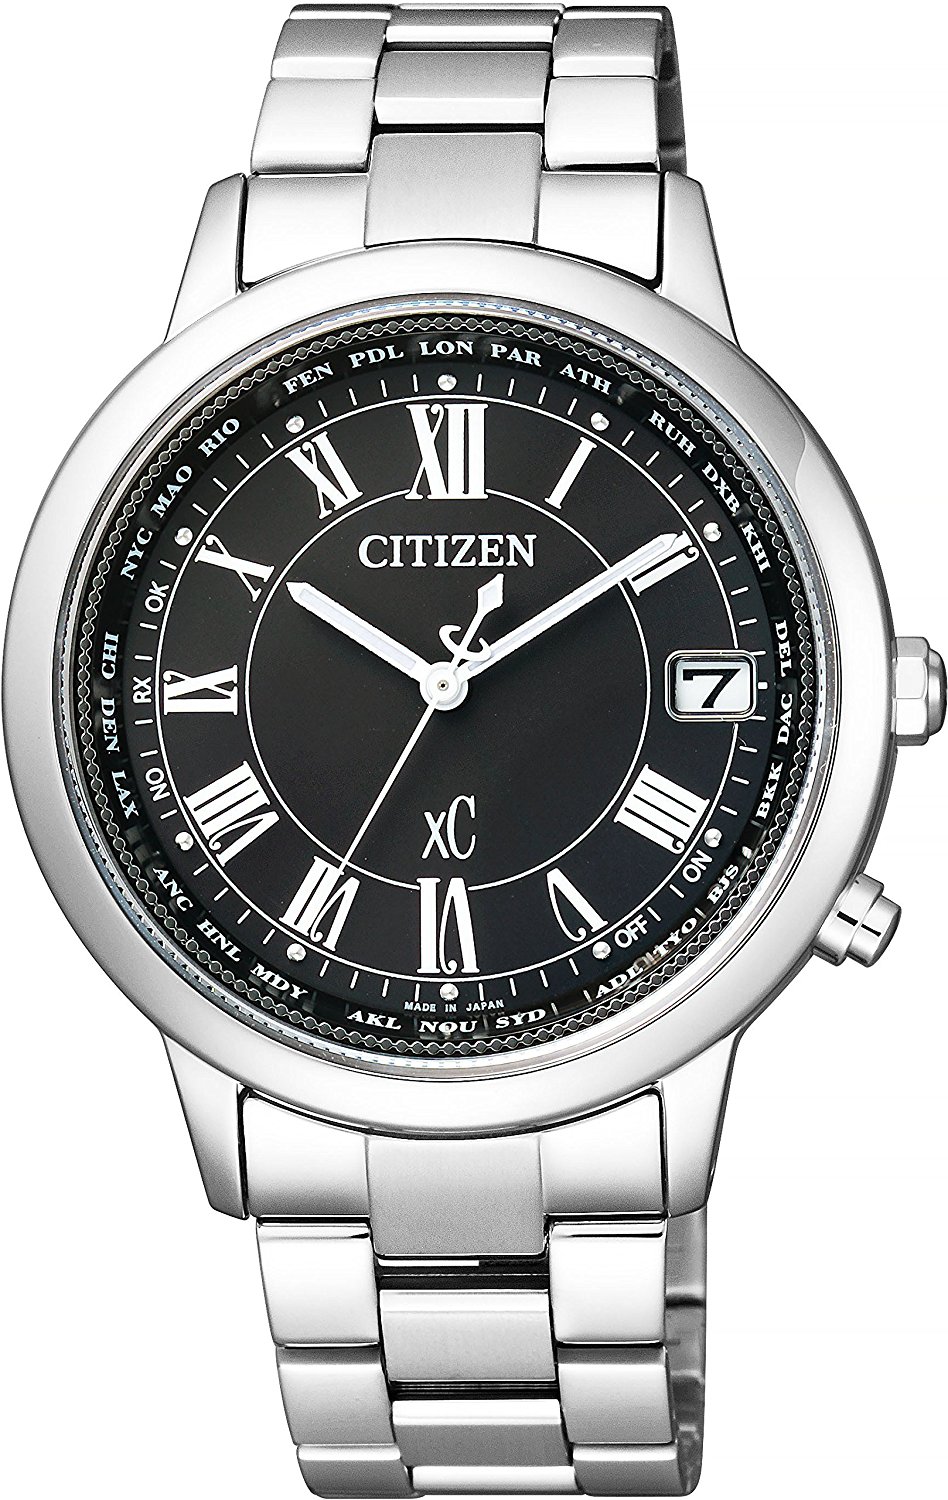 Đồng hồ Citizen CB1103-08A tinh tế dành cho phái đẹp